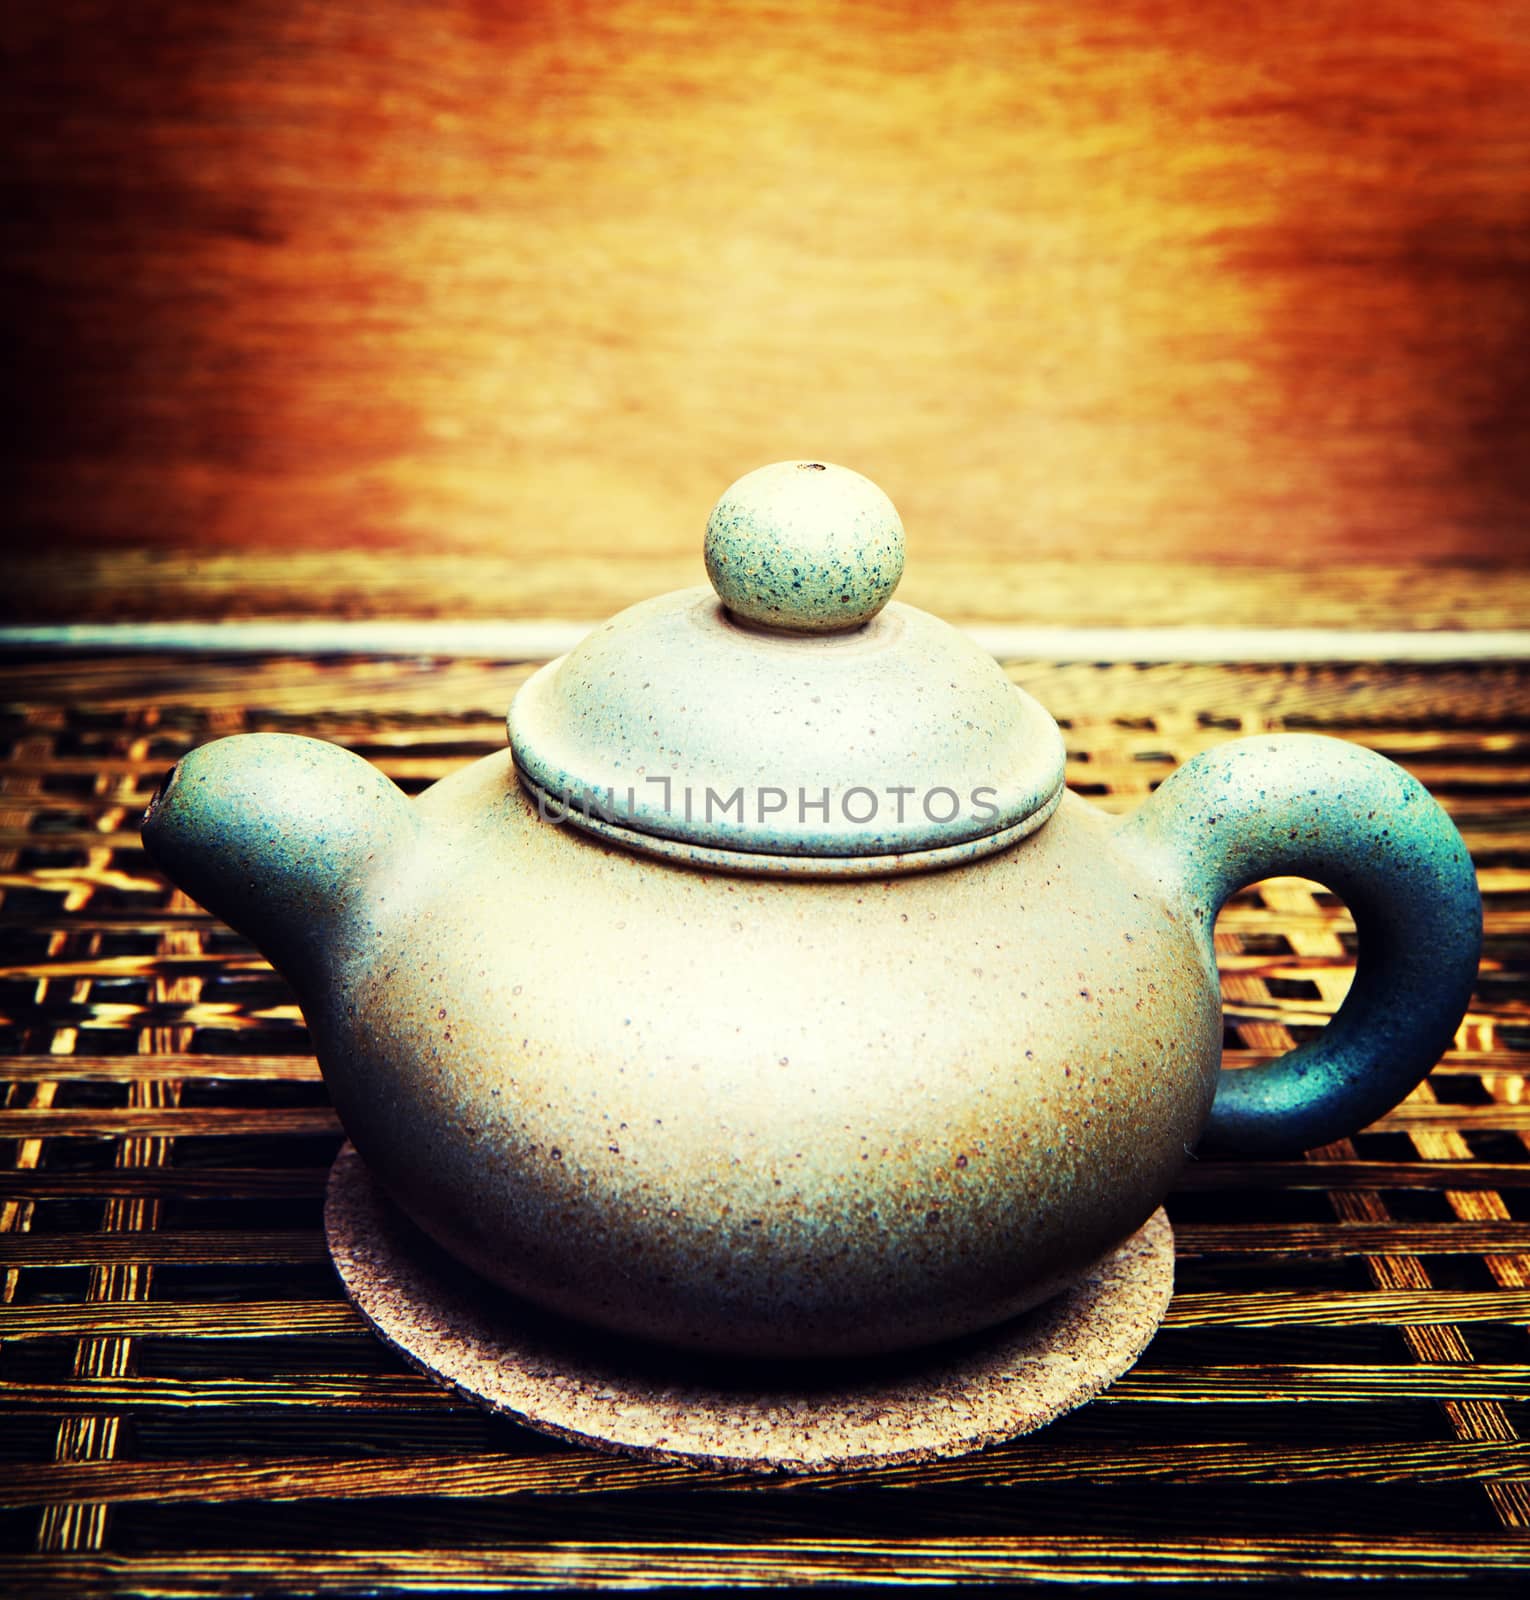 Chinese ceramic teapot studio by Jonicartoon